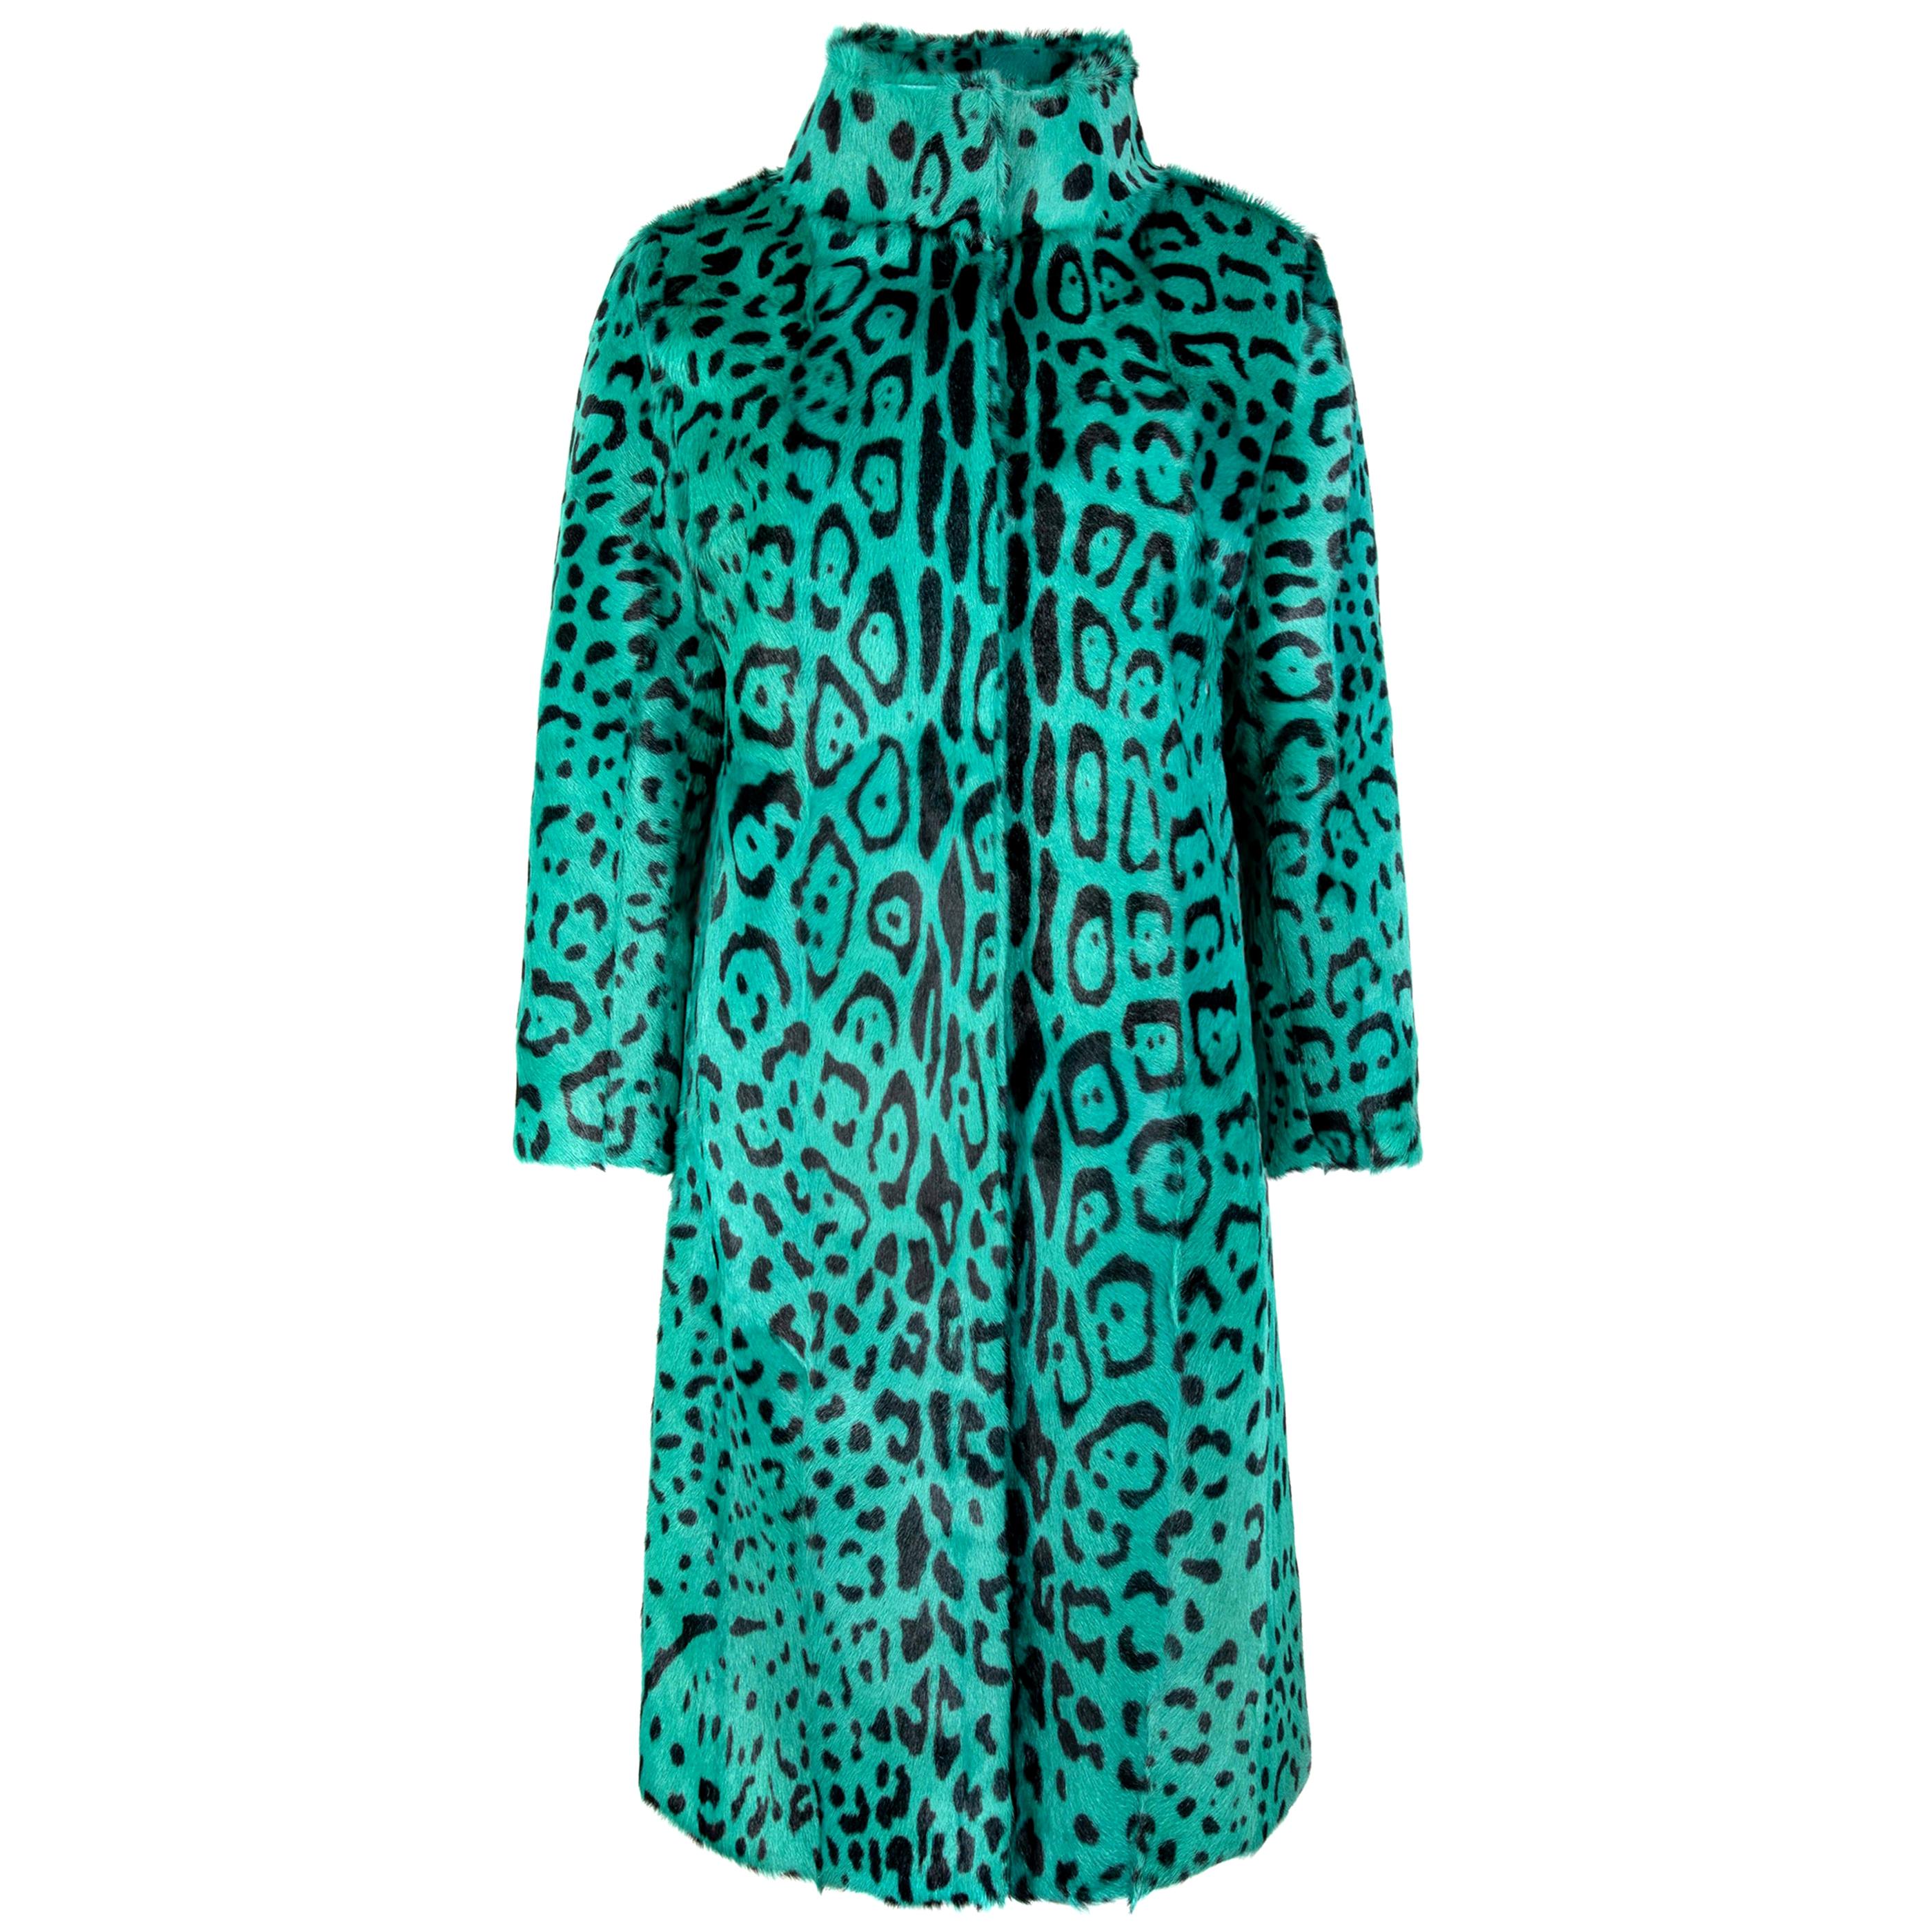 Verheyen London Manteau à col haut vert imprimé léopard en fourrure de chèvre, Taille UK 12